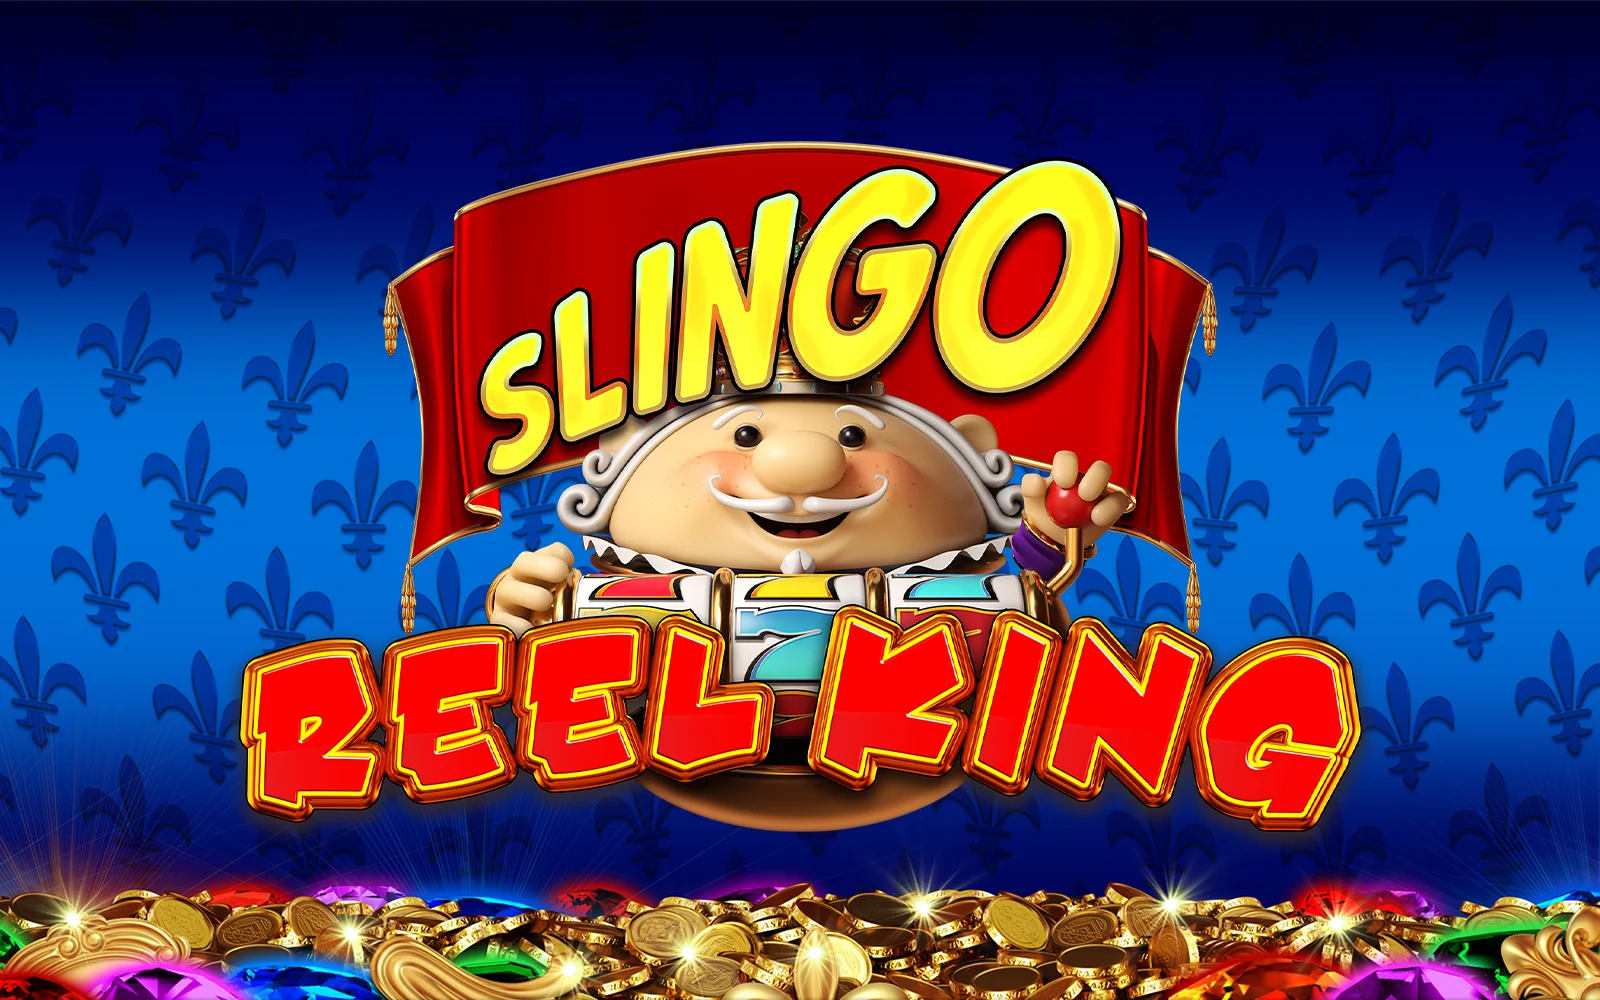 Spielen Sie Slingo Reel King auf Starcasino.be-Online-Casino